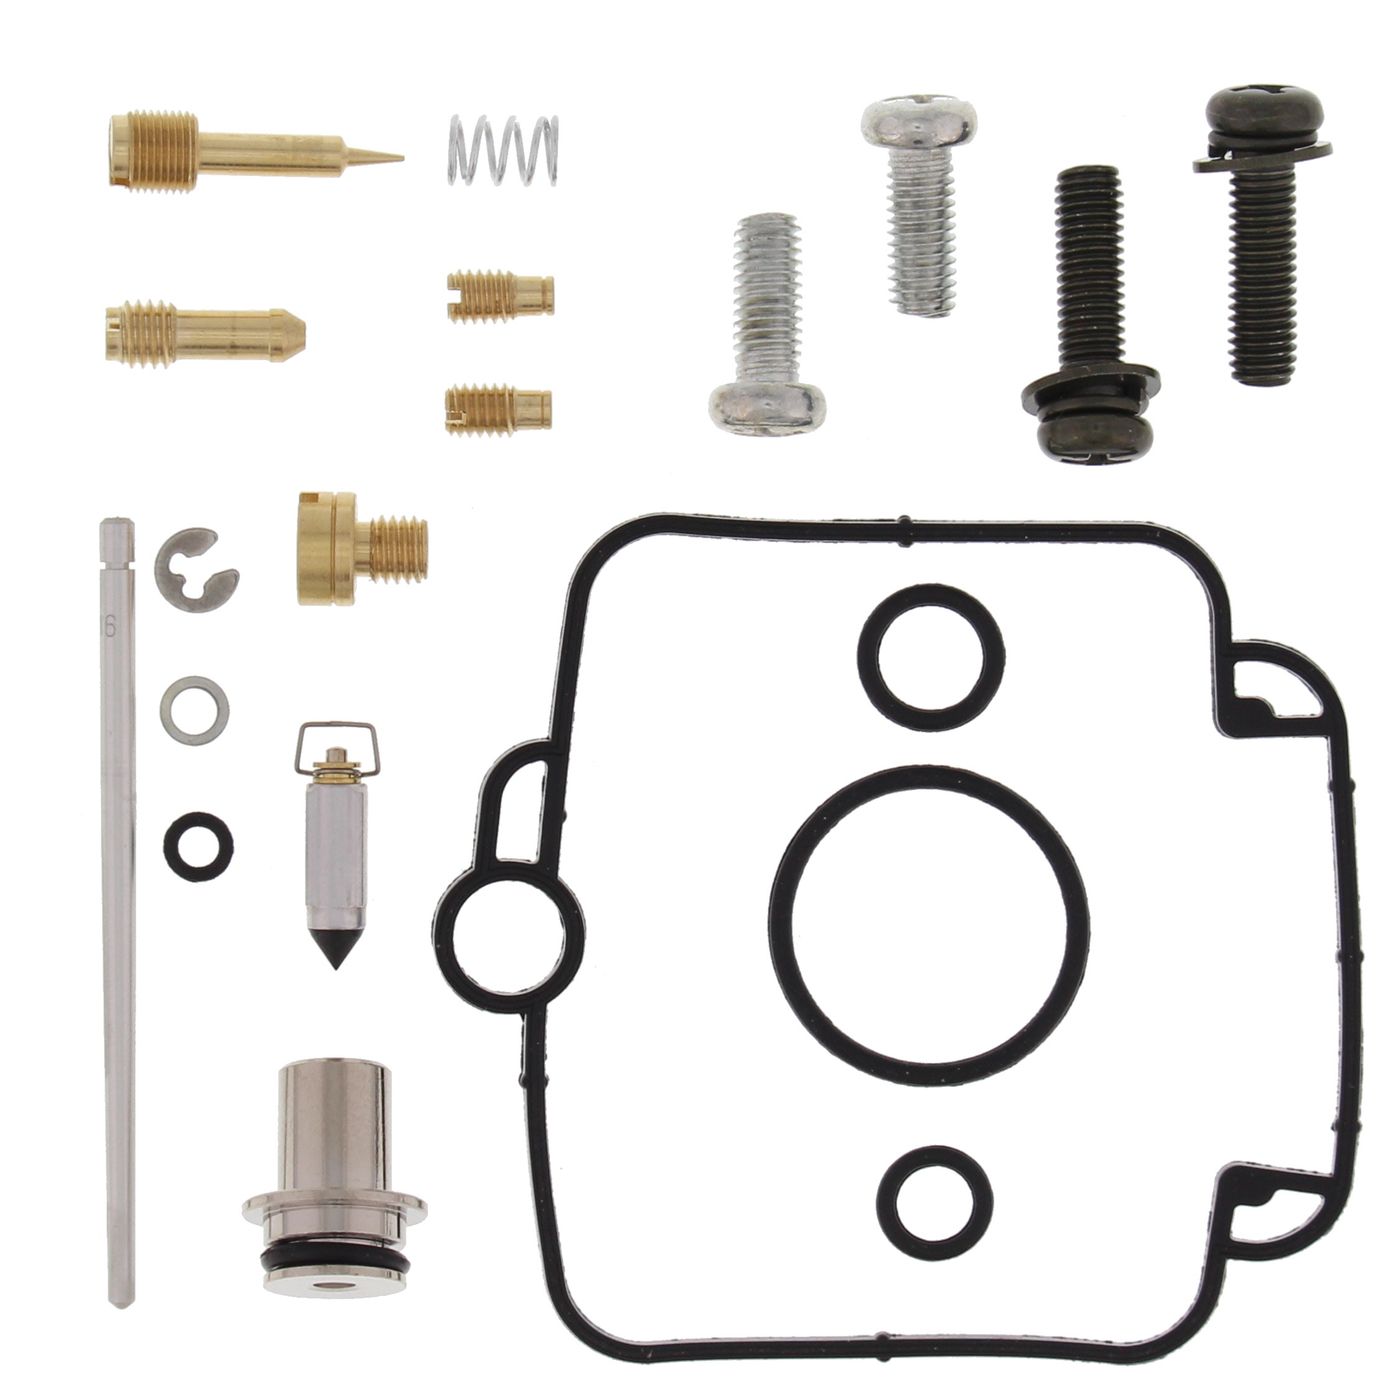 Wrp Carb Repair Kits - WRP261130 image